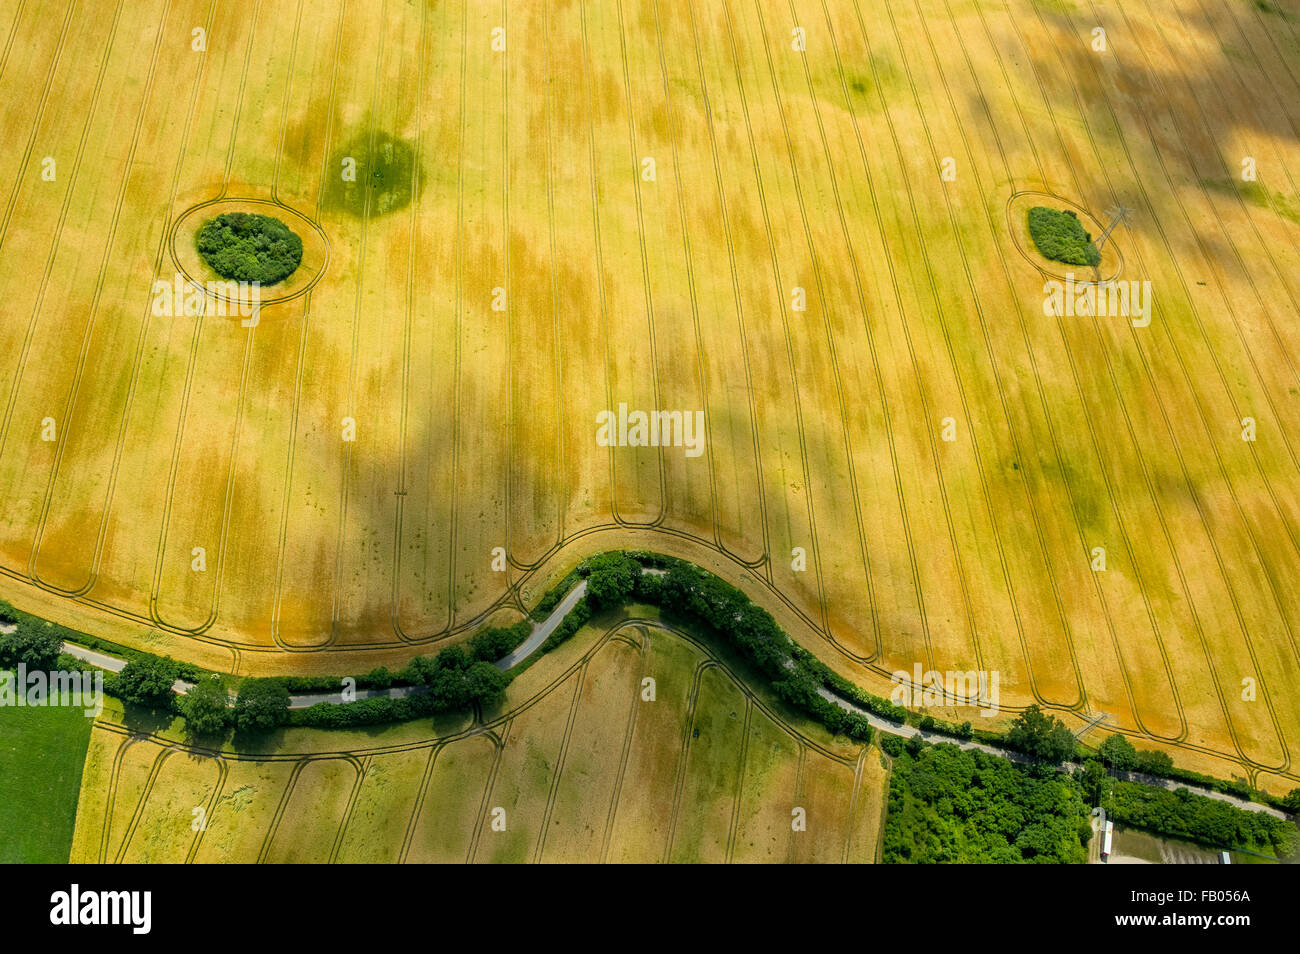 Kornfeld mit Bush Hecken in Form von einem Gesicht, Landwirtschaft, Bad Oldesloe, Schleswig-Holstein, Deutschland, Europa, Luftbild, Stockfoto